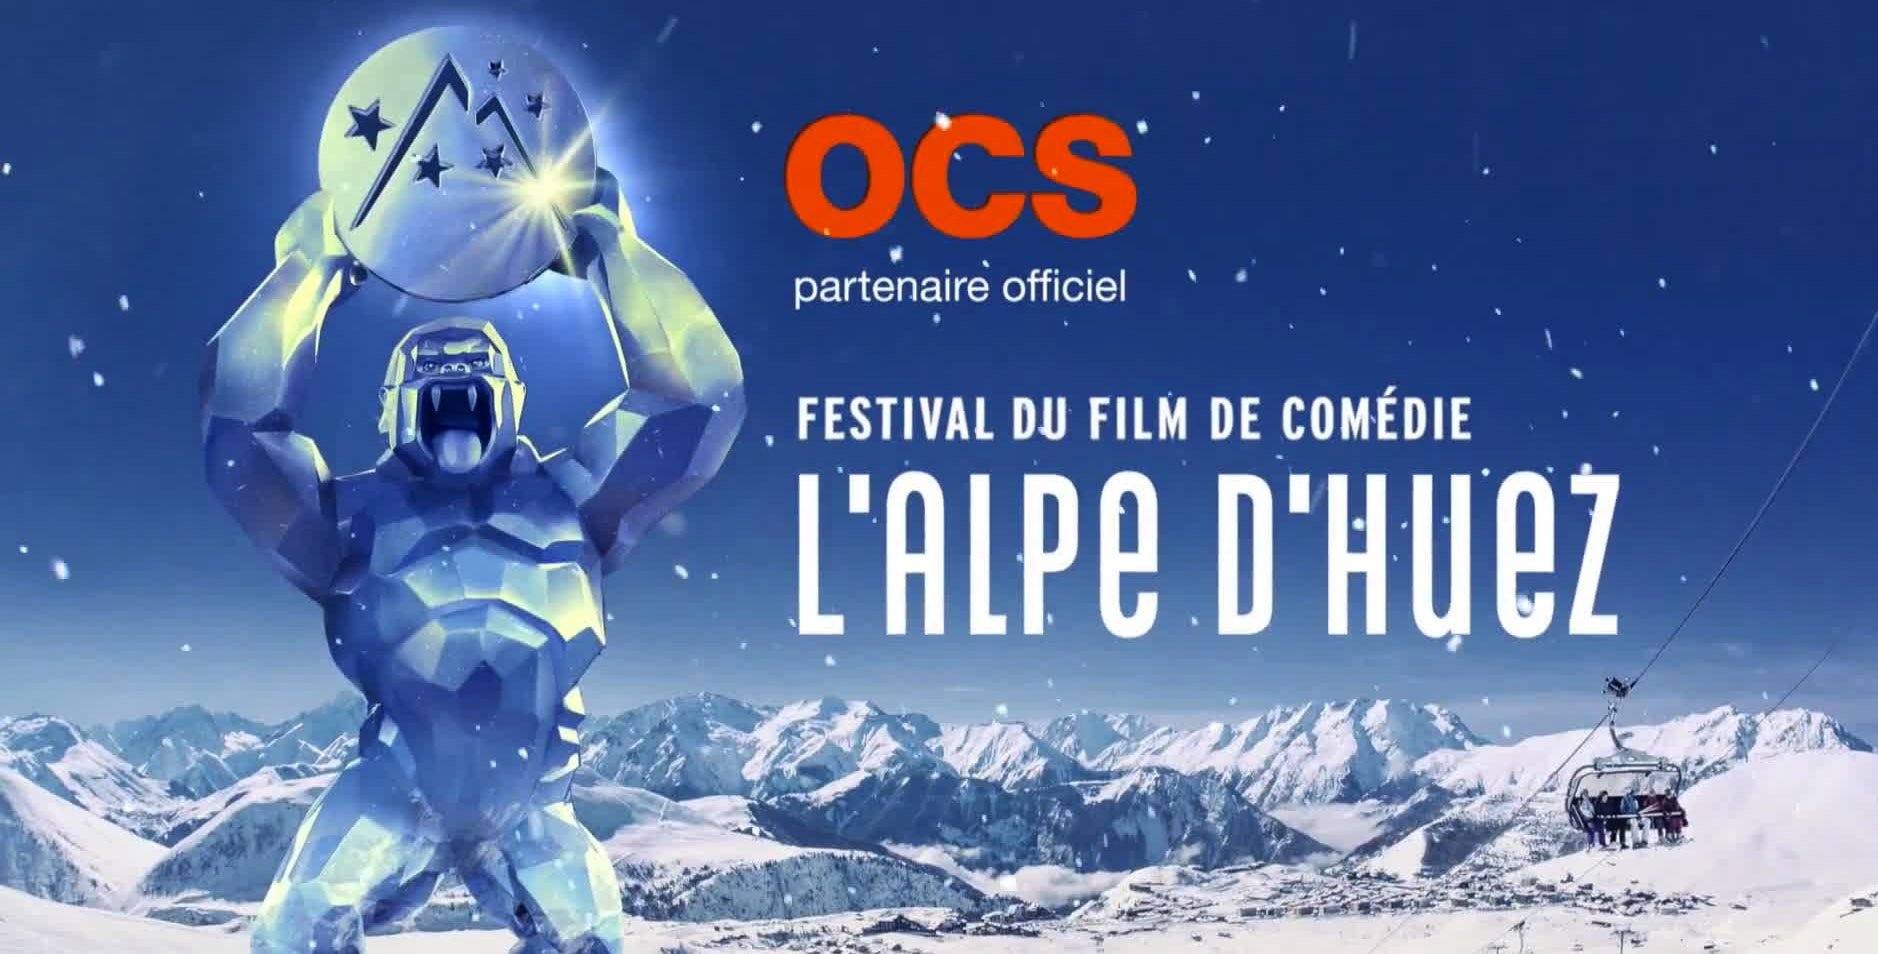 Le Festival du film de comédie de l'Alpe d'Huez est annulé